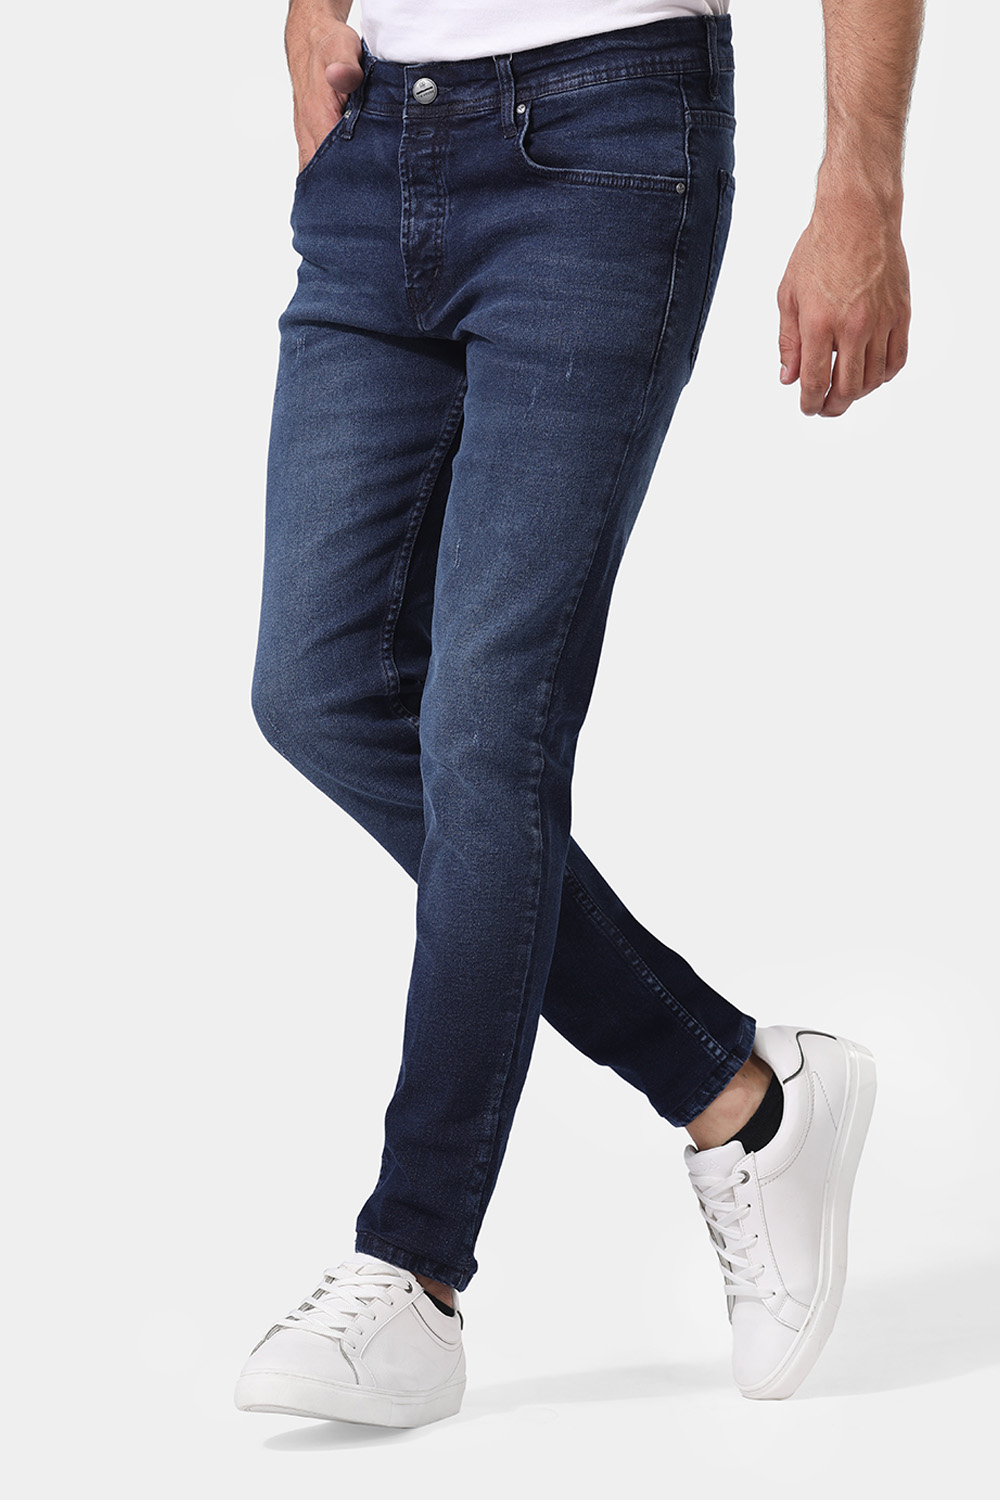 Buy Van Heusen Blue Trousers Online - 597184 | Van Heusen